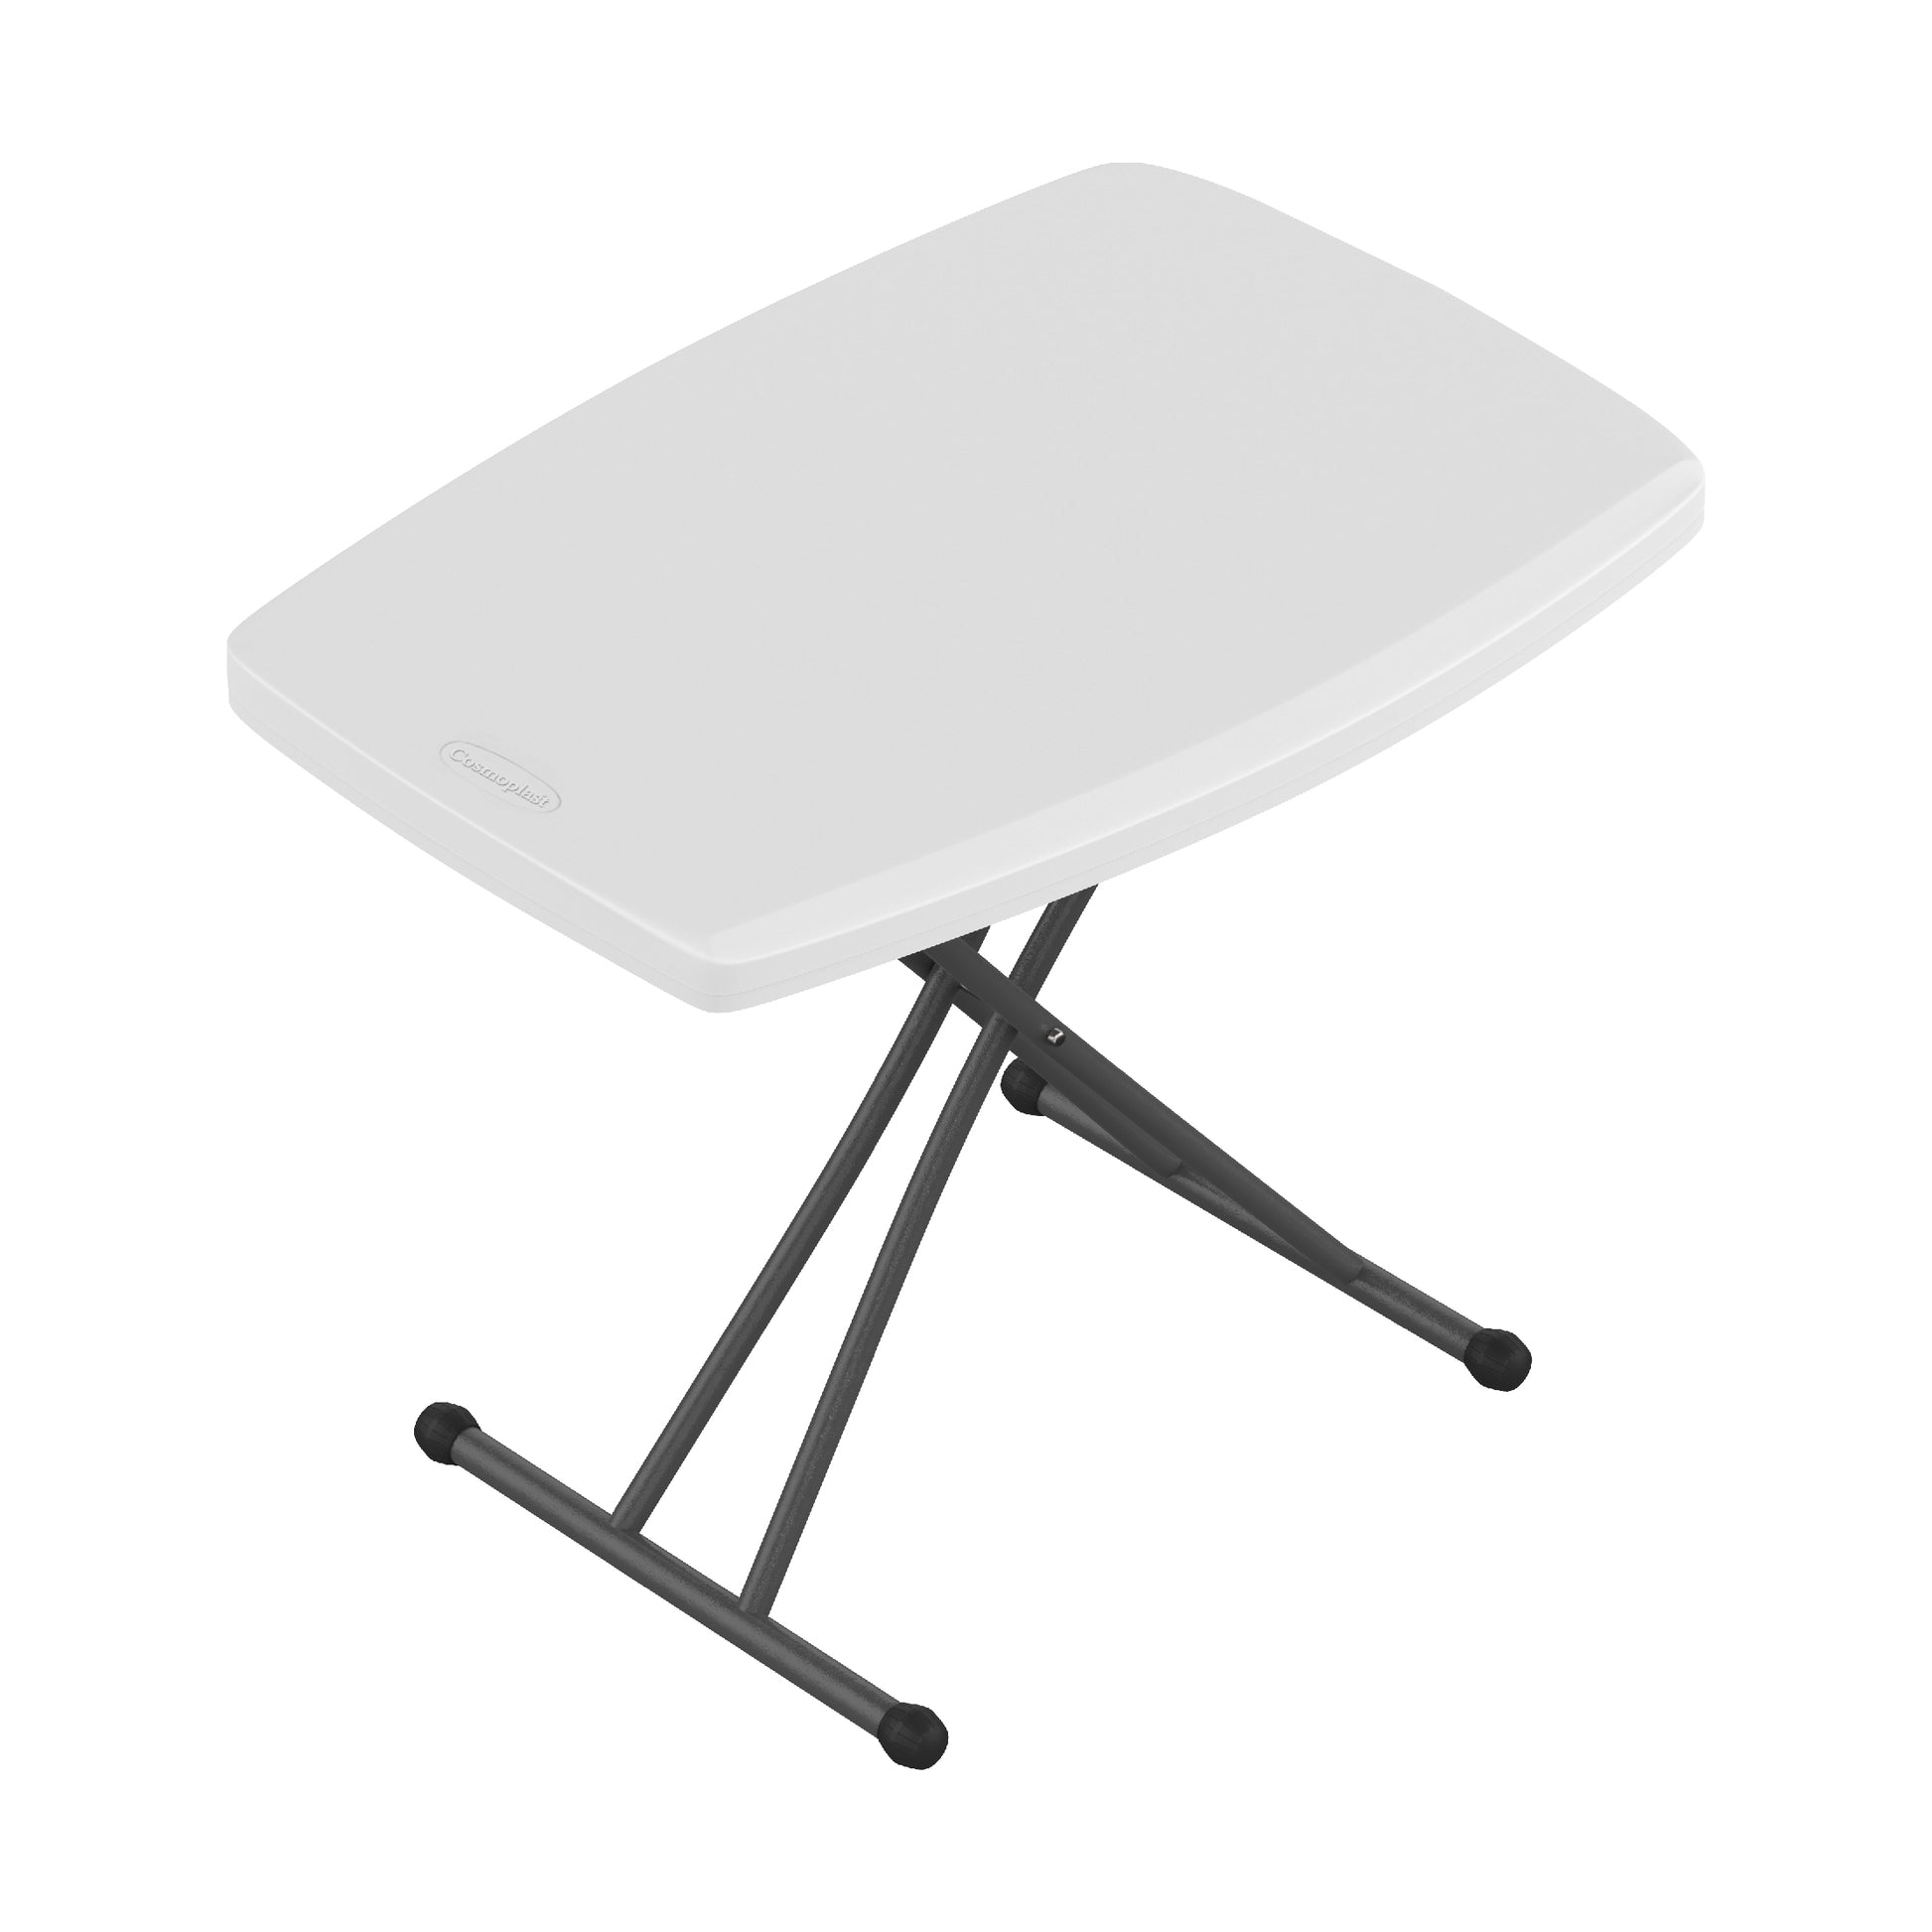 Adjustable Folding Table with Steel Legs